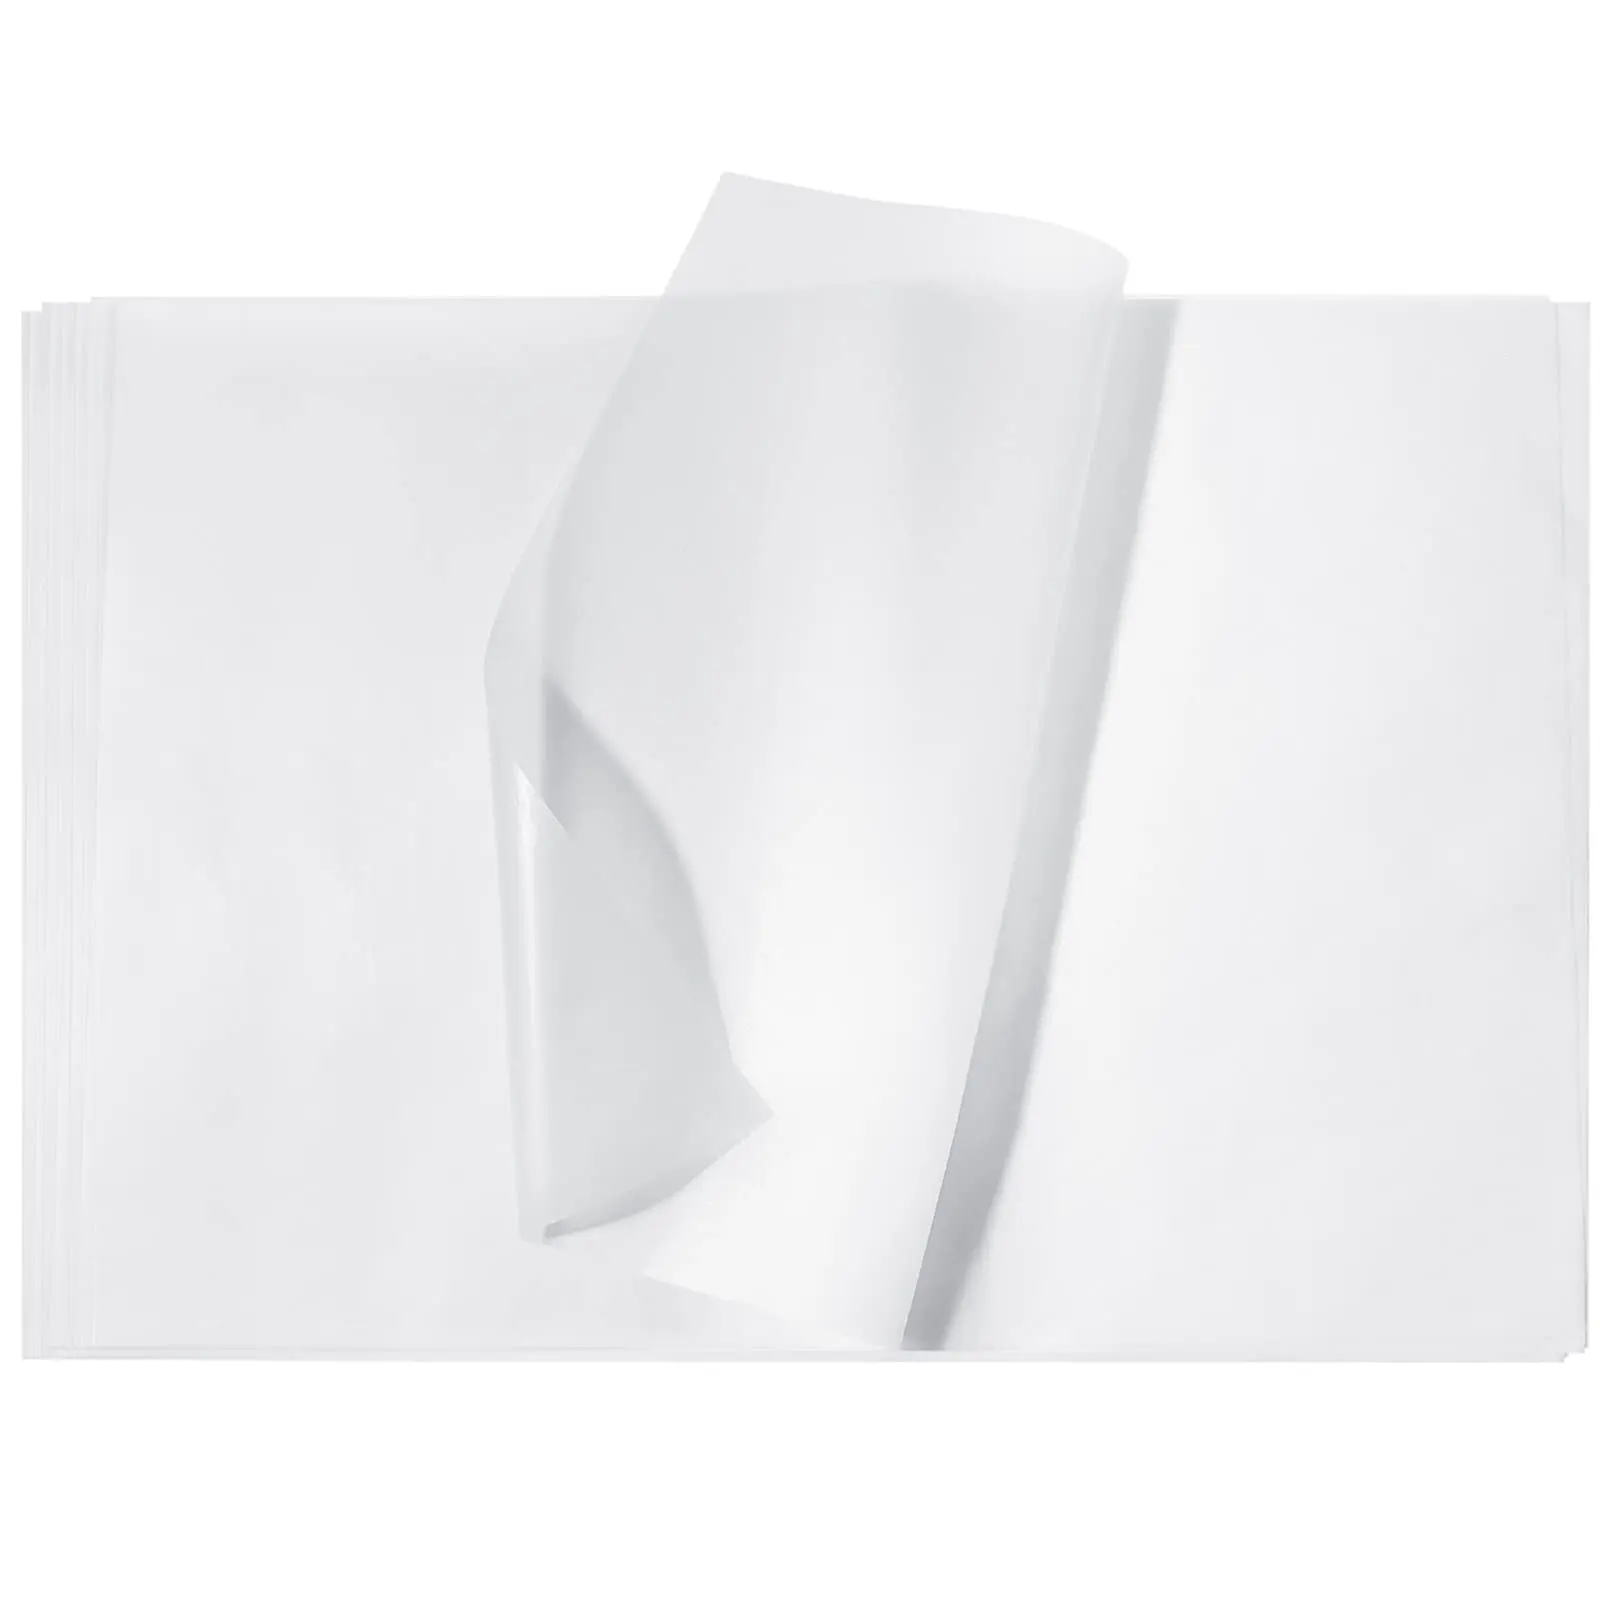 Обложка для карточек A4 A3, бумага для кальки, бумага для печати, тонкая полупрозрачная бумага для рисования и обертывания